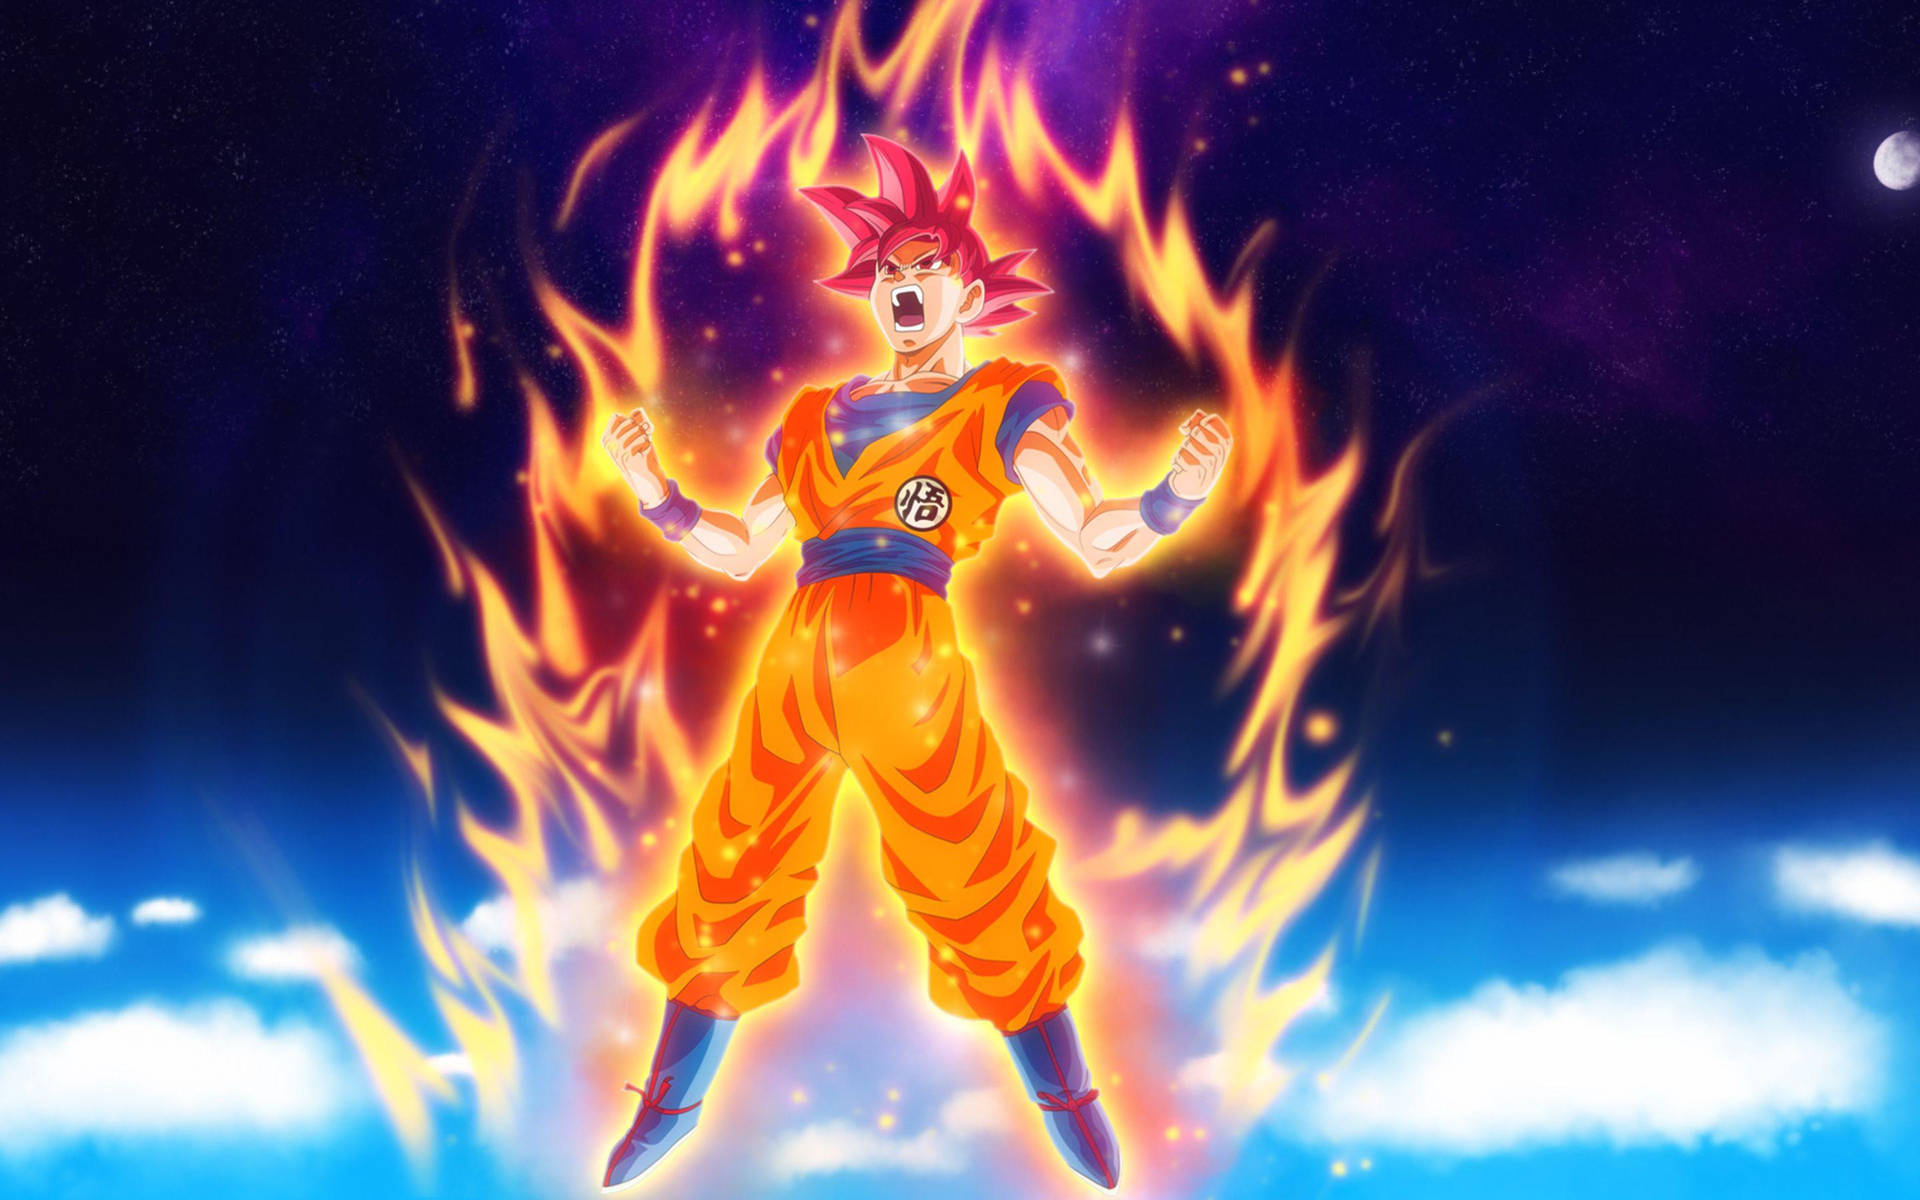 Goku Dragon Ball Super On Fire Wallpaper